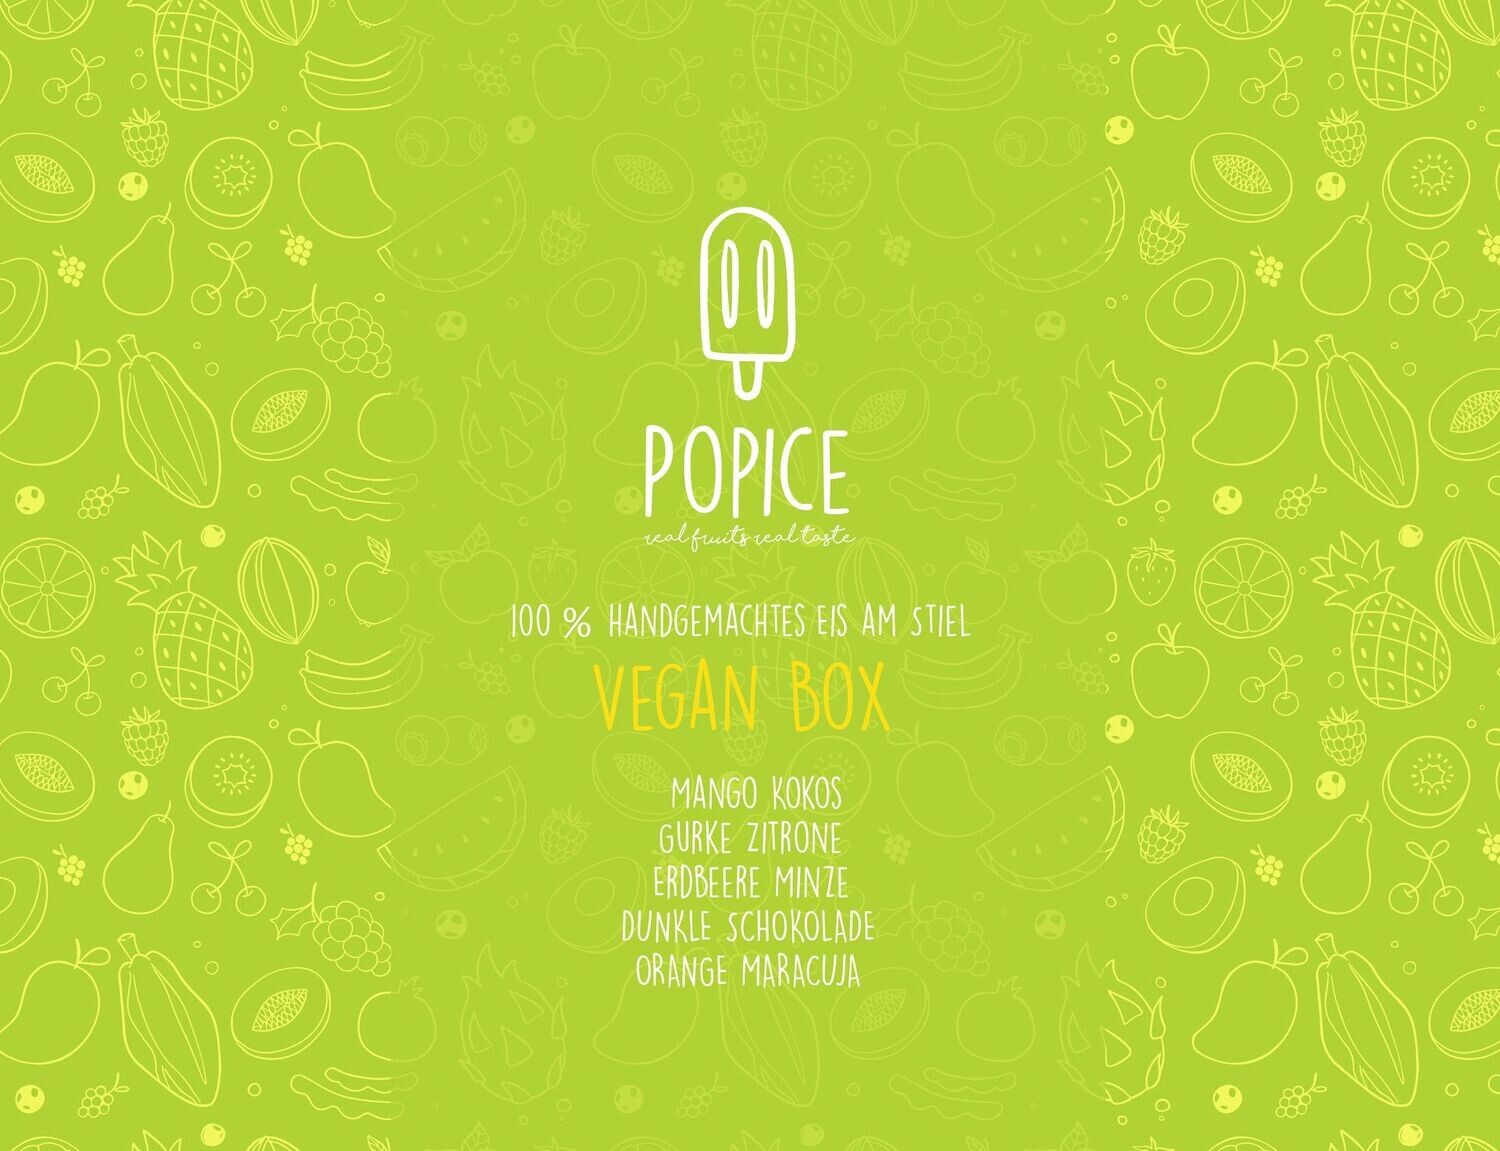 'Vegan' Box